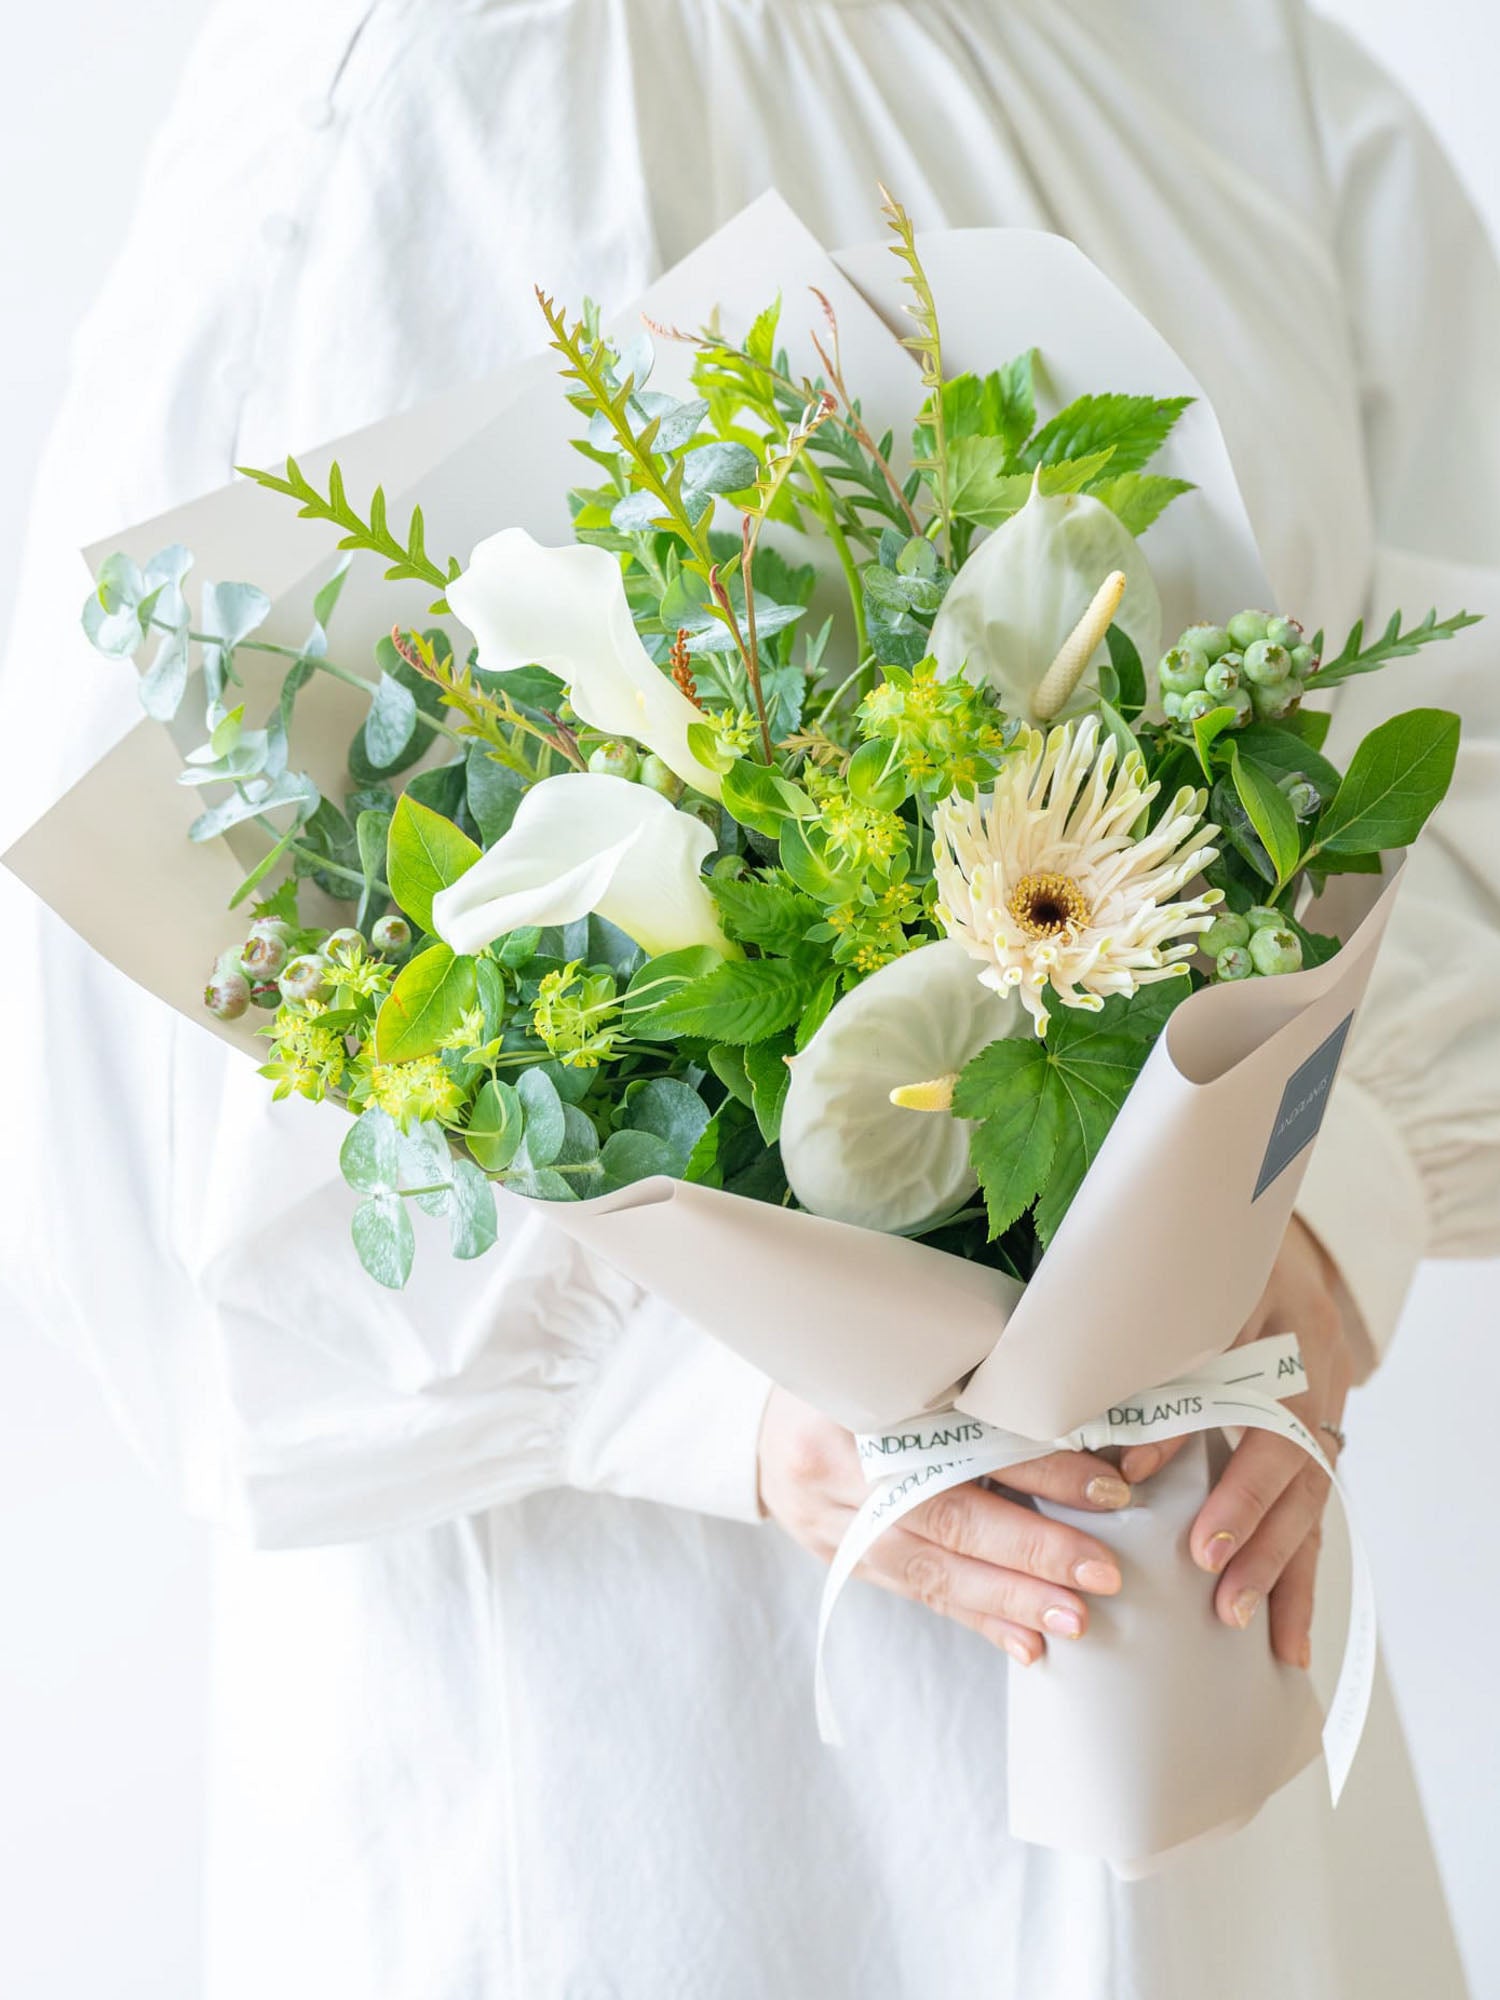 ☆ユーカリポポラスベリーと白いお花のスワッグ(ドライフラワースワッグ)☆ブーケ